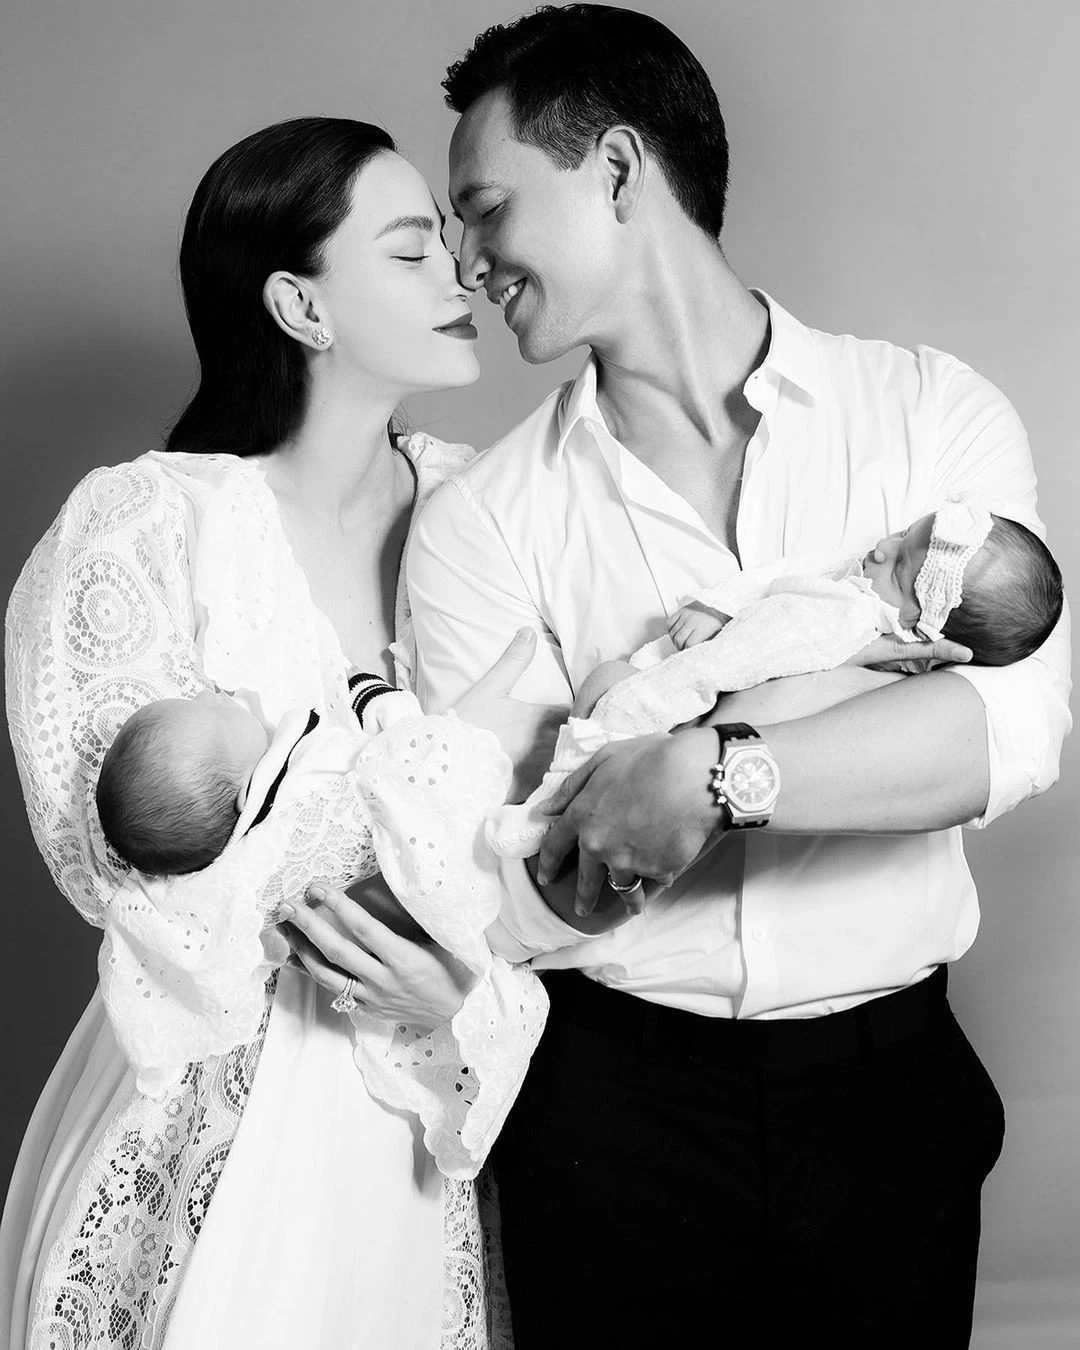 Đầu tháng 11/2020, Hồ Ngọc Hà hạ sinh hai bé Leon và Lisa cho Kim Lý và được anh cầu hôn ngay tại bệnh viện.